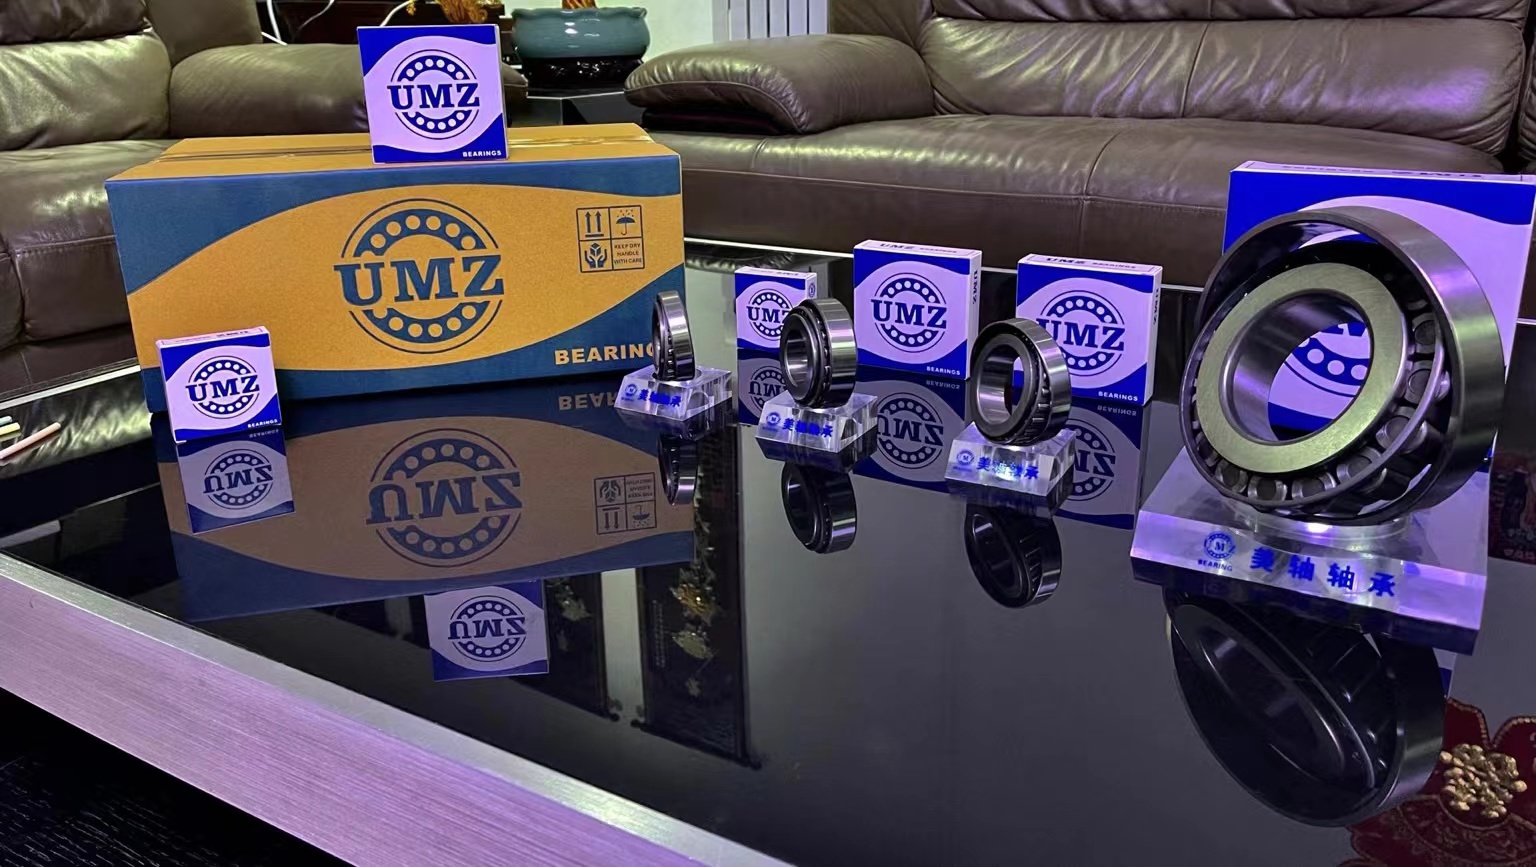 UMZ products